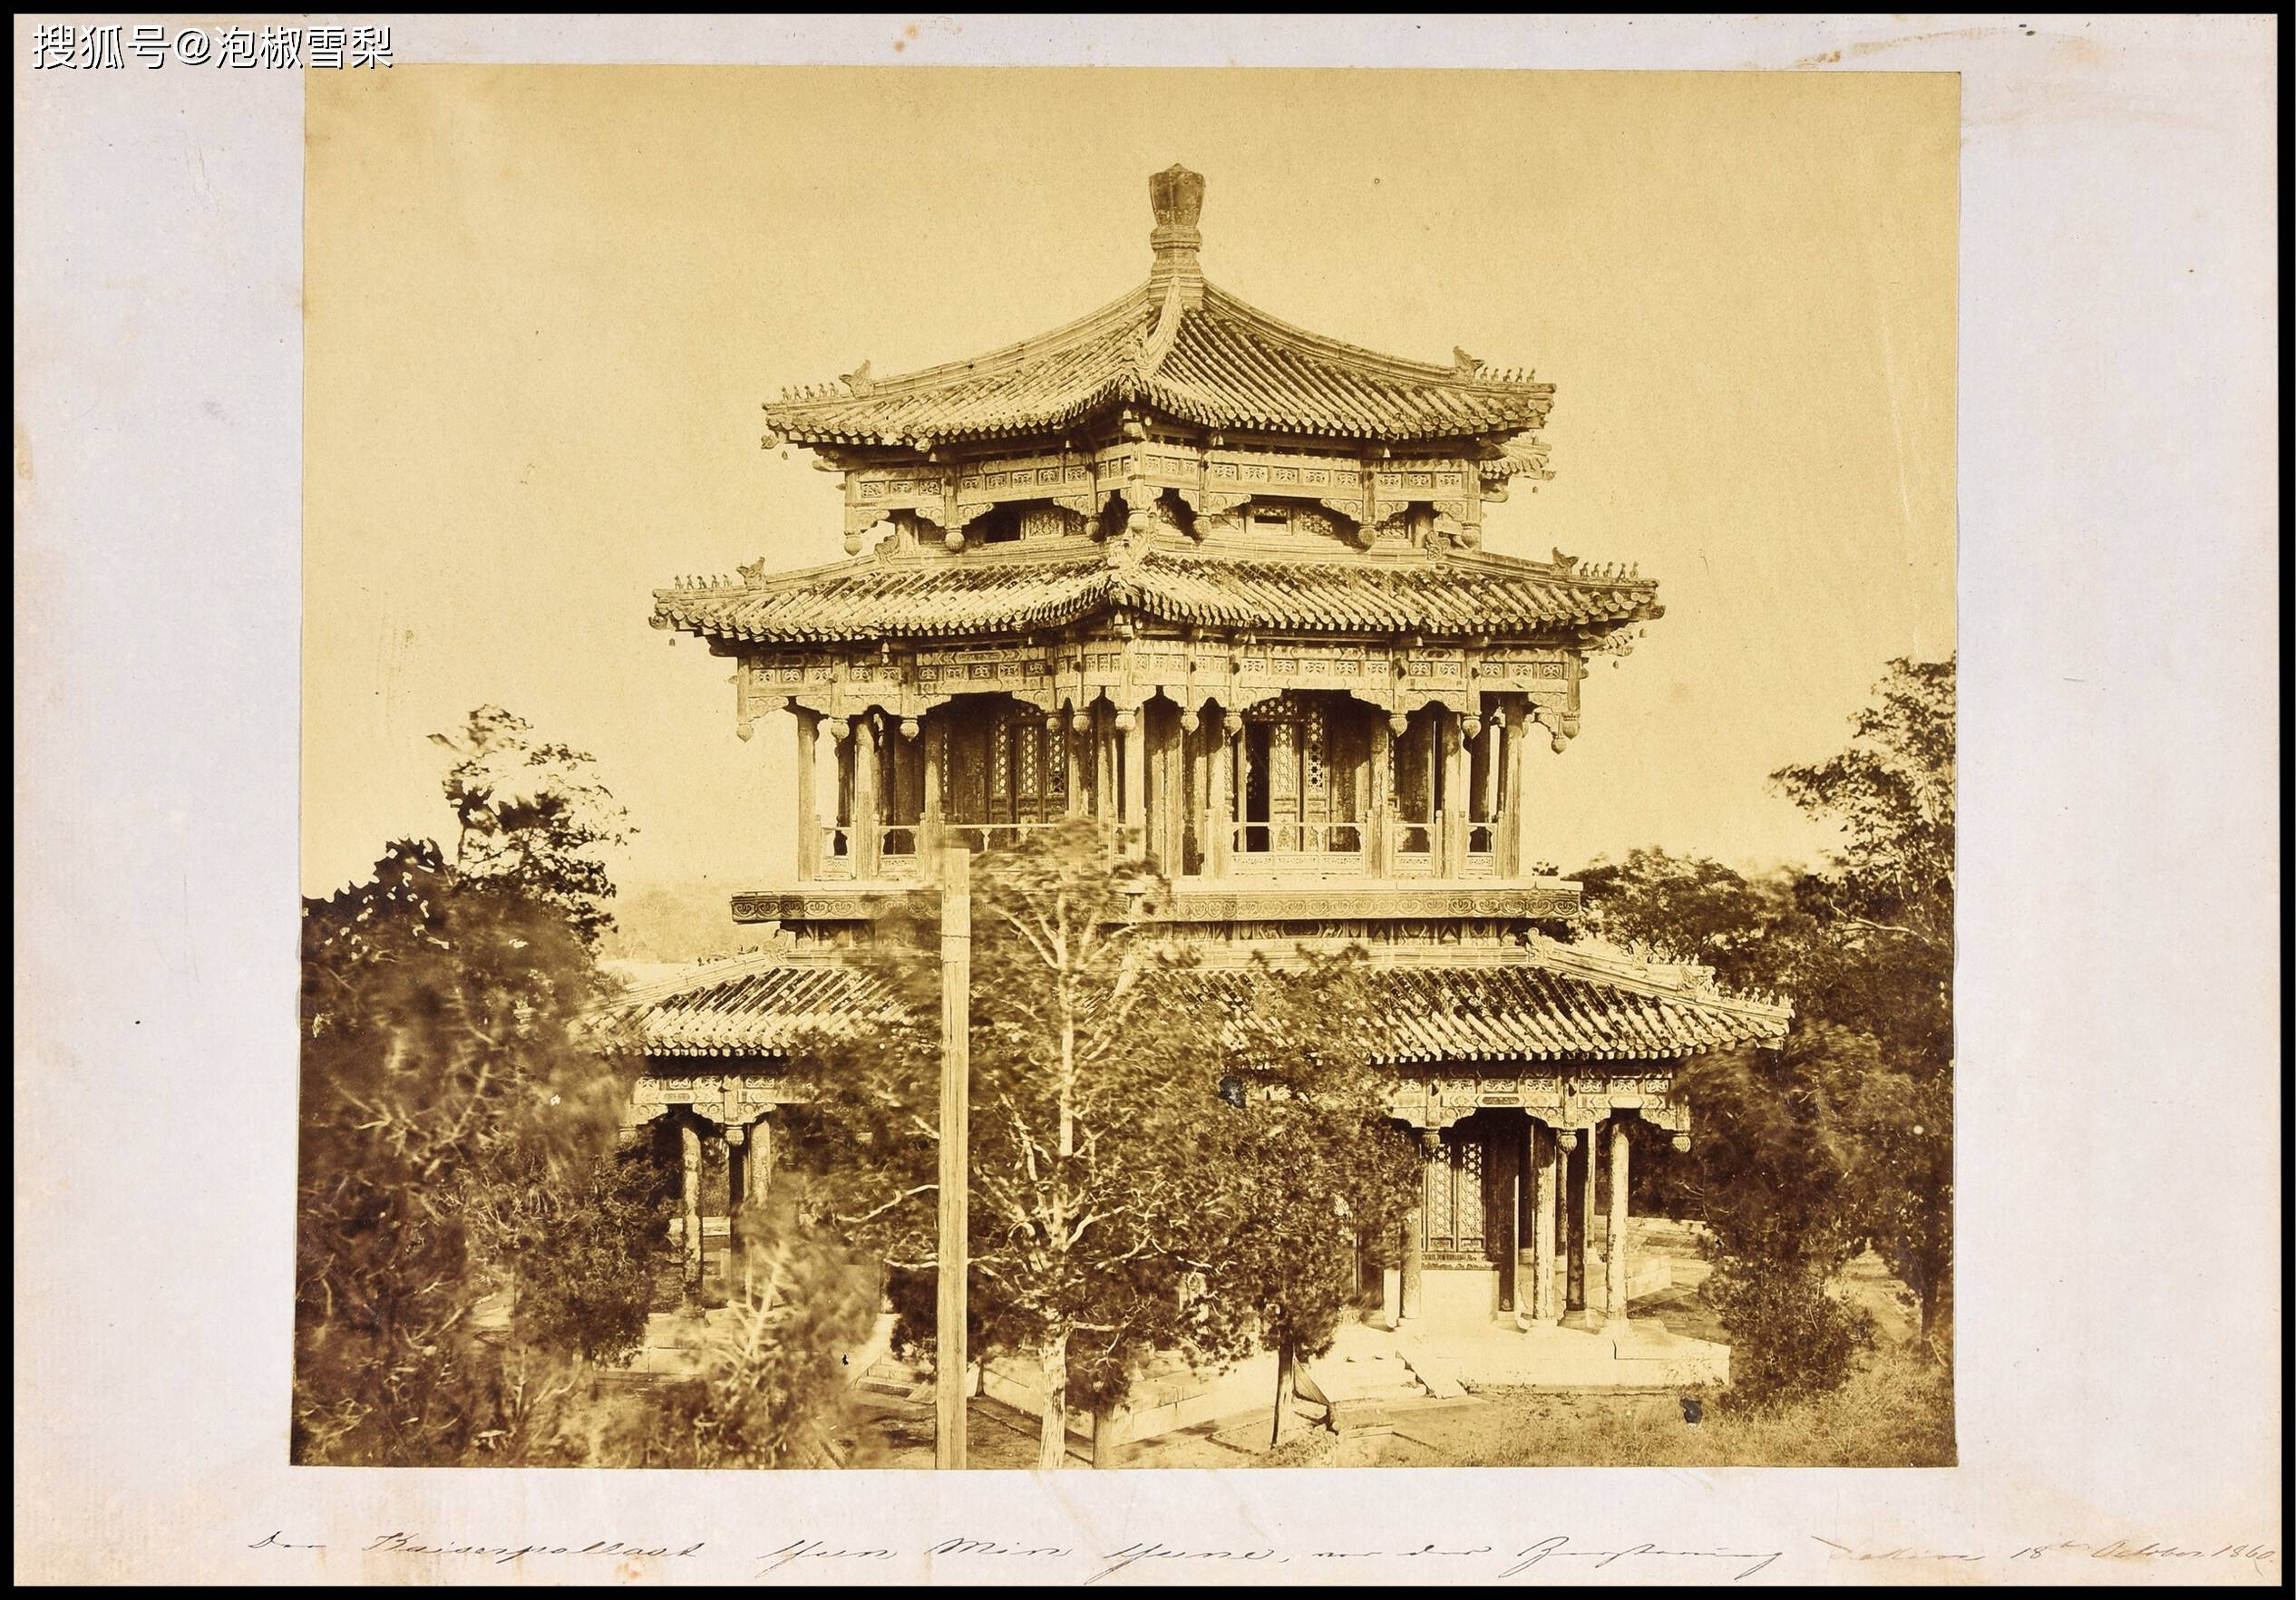 1860年10月18日圆明园清漪园之昙花阁照片,意大利籍摄影师费利斯·比